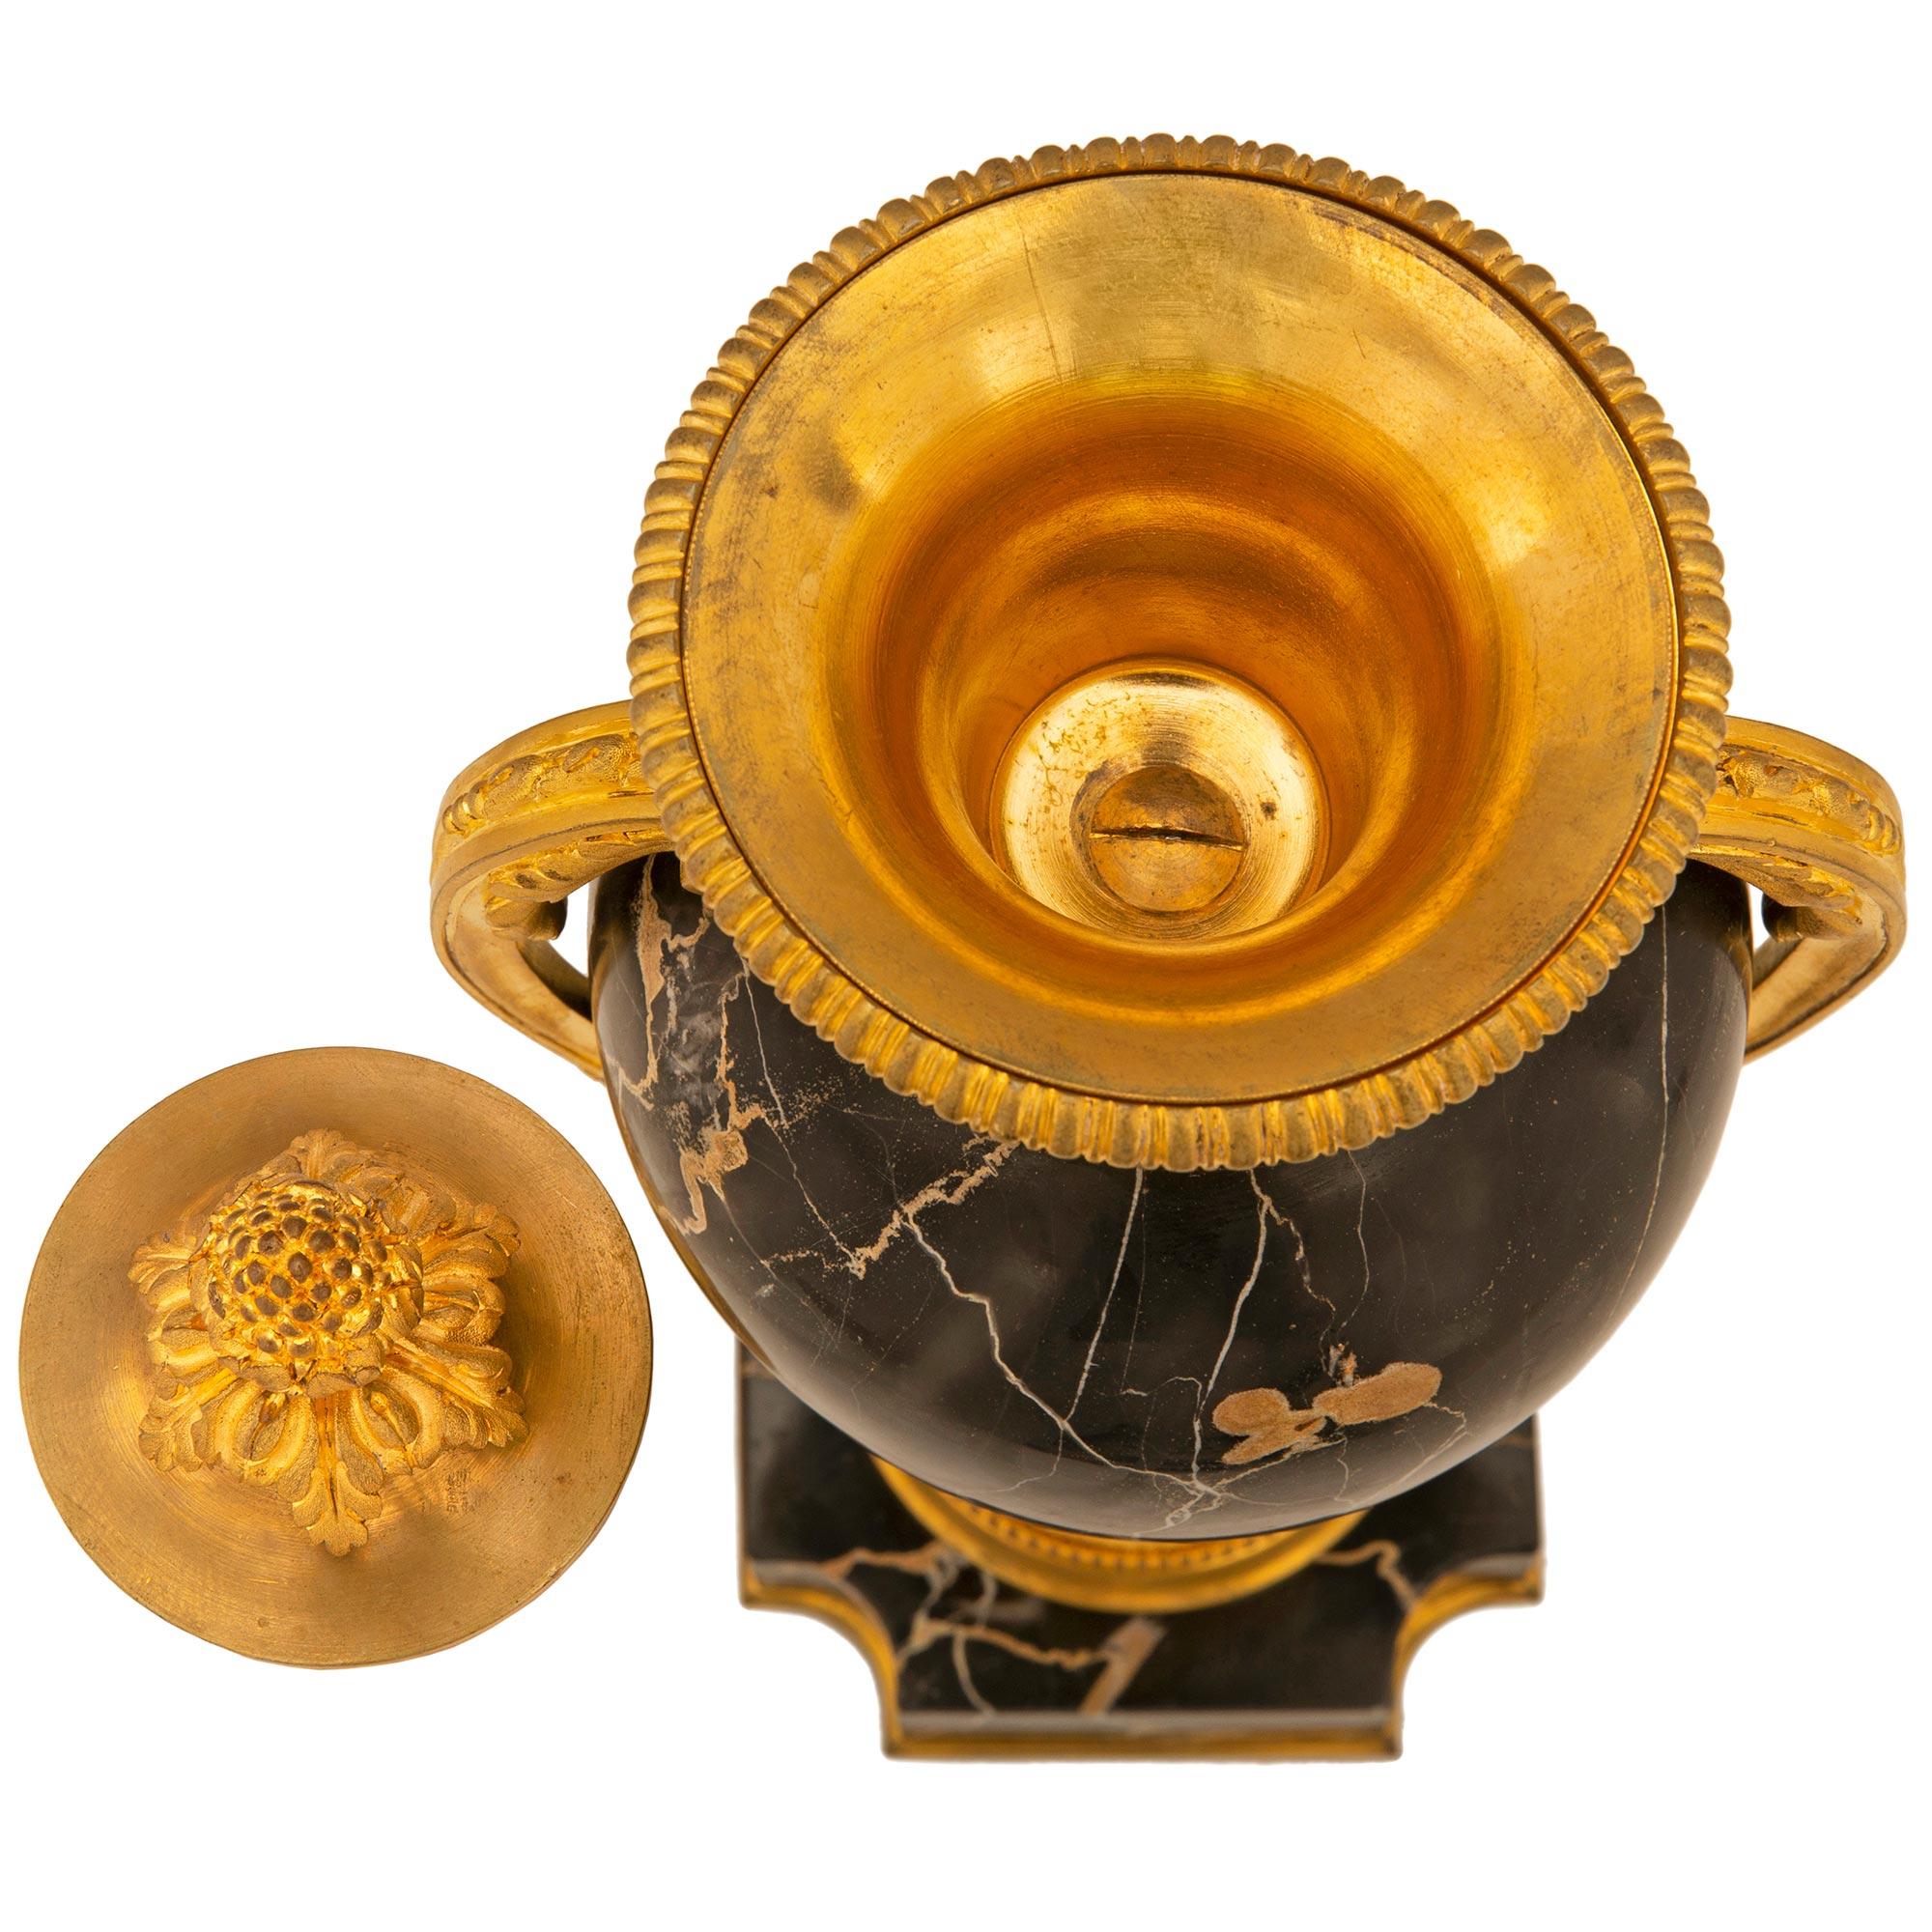 Une belle et très élégante paire d'urnes à couvercle en marbre Portoro et bronze doré de style Louis XVI. Chaque urne est surélevée par une base carrée en marbre Portoro avec des angles concaves et un fin filet de fond en bronze doré. Le support du